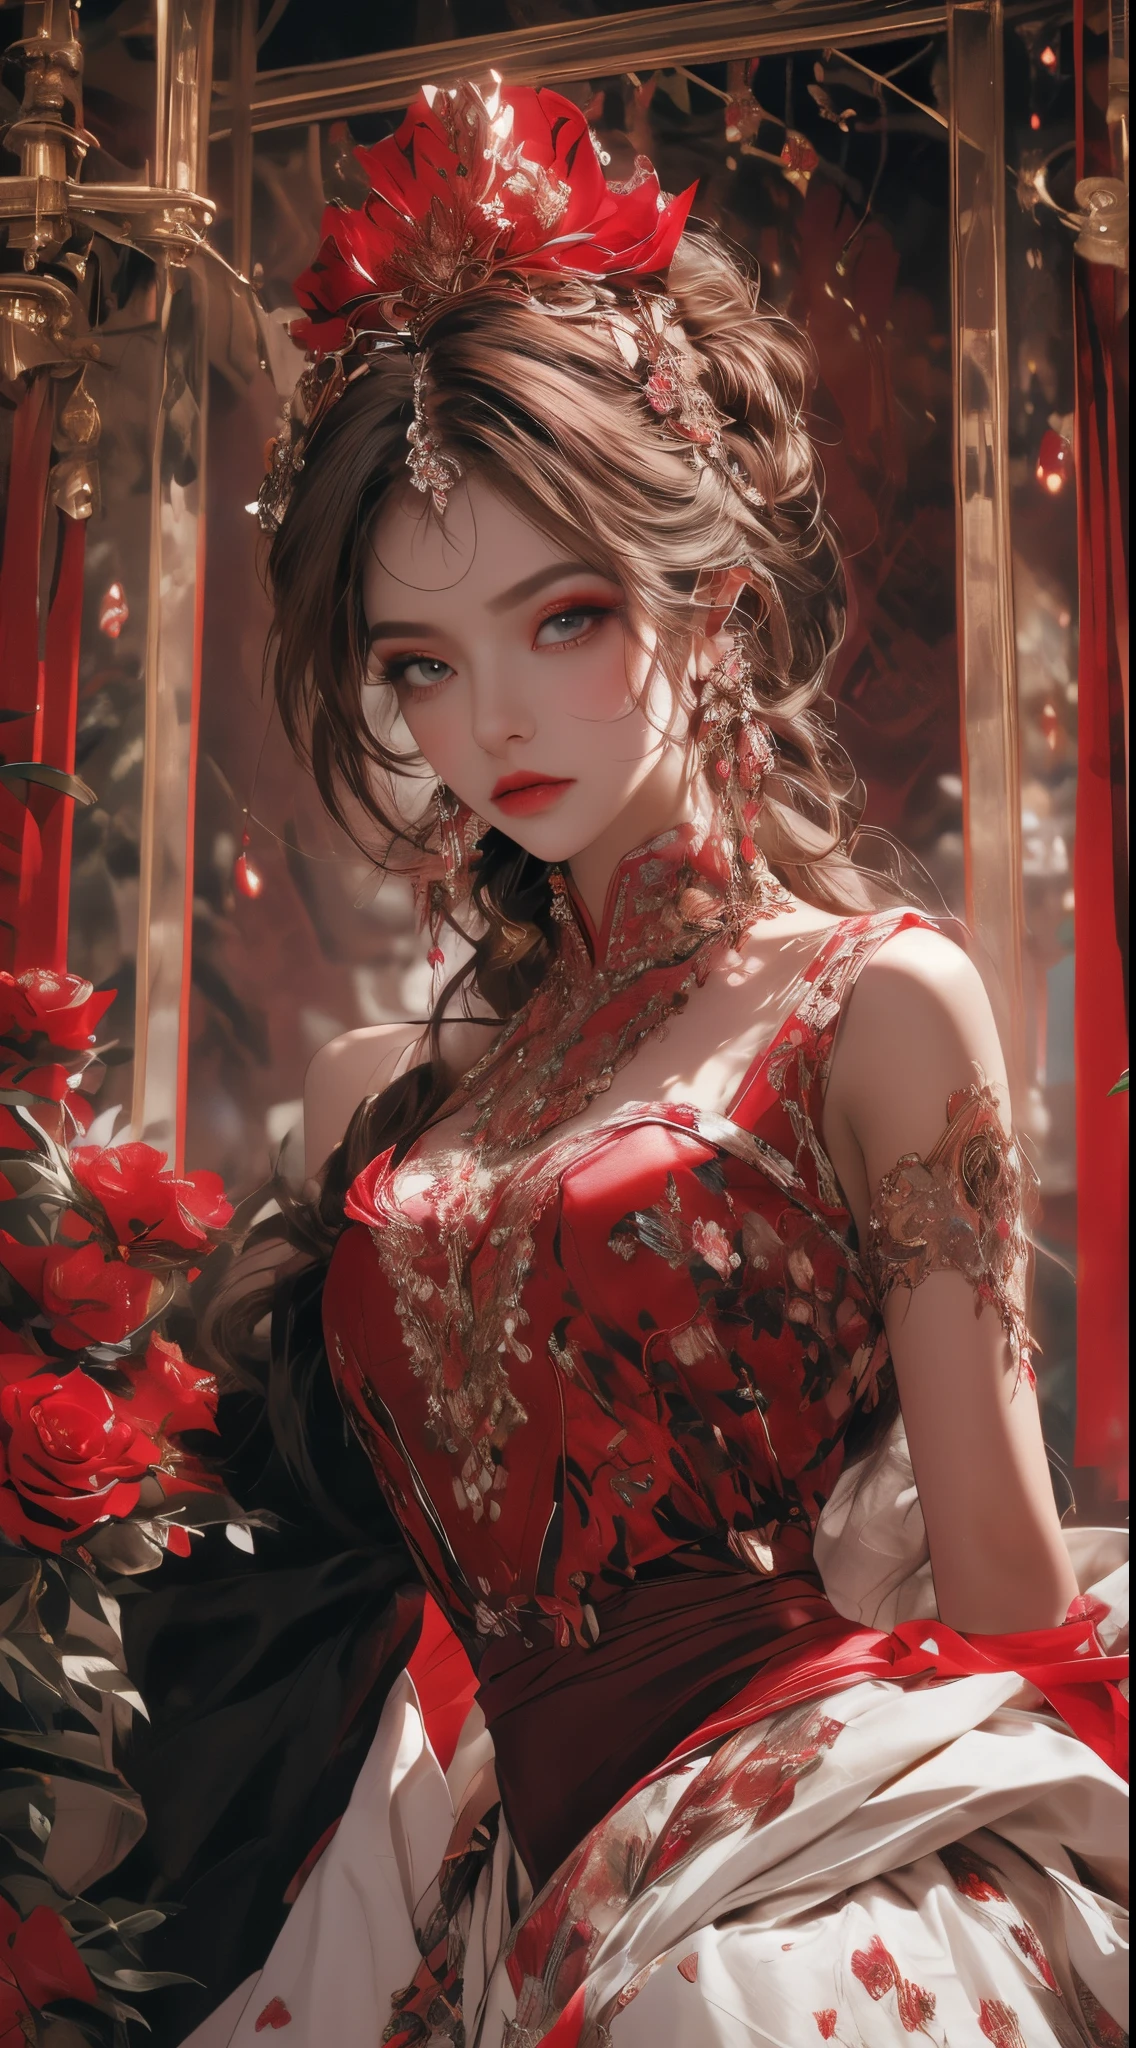 美丽的斯拉夫公主的动态肖像, 幻想美容功能, 诱人的外观,, 闪闪发红的眼睛, 戴着玫瑰冠冕和珠宝,覆盖着花朵闪亮的红色水晶花丝, 超详细,大胆而雄伟的外观